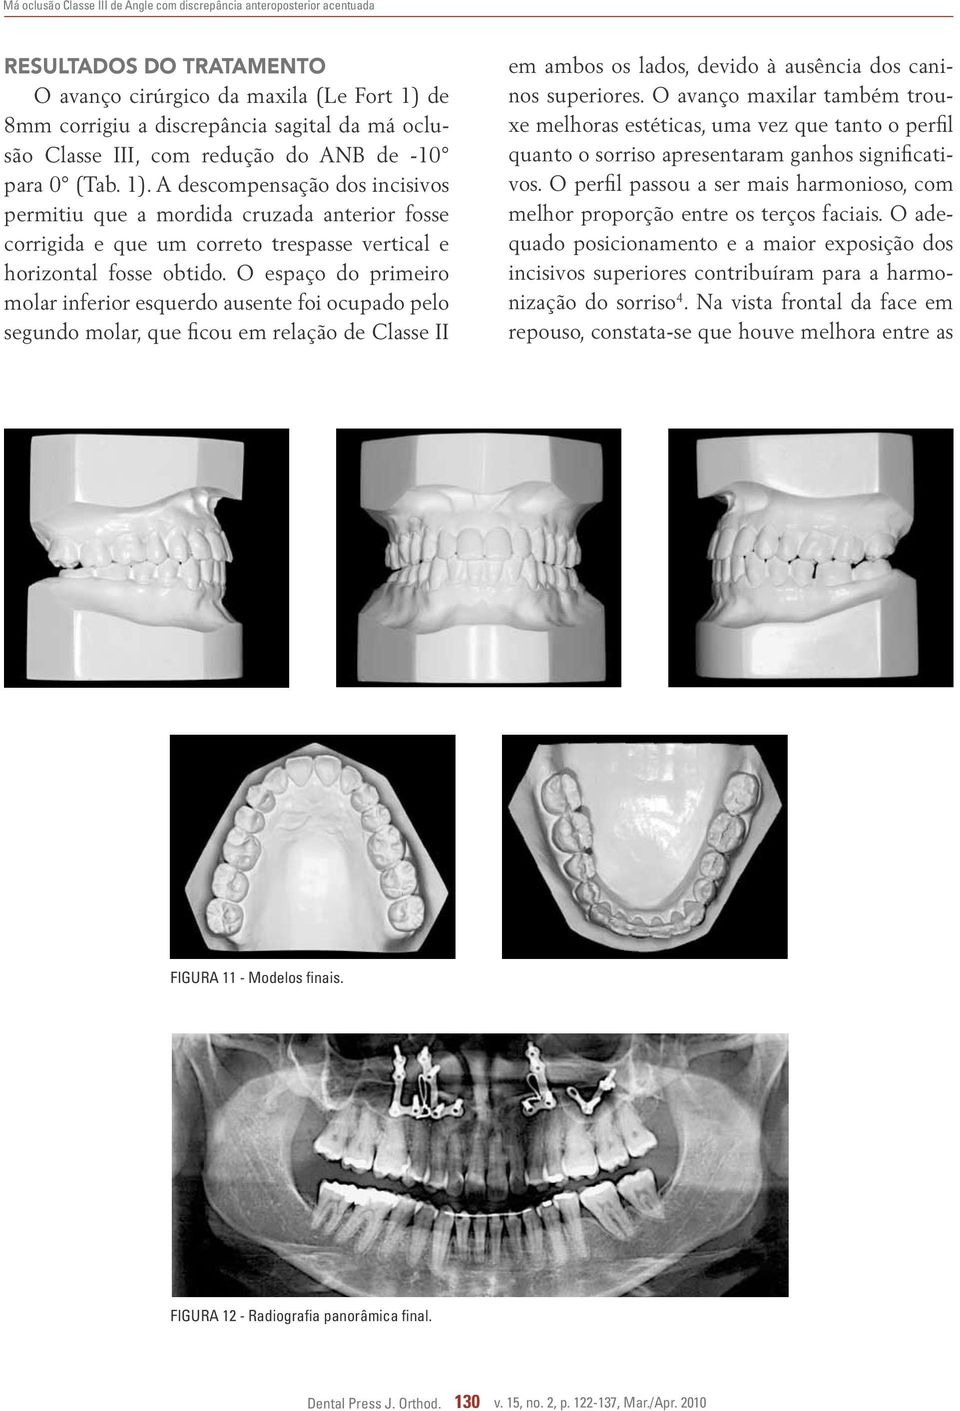 O espaço do primeiro molar inferior esquerdo ausente foi ocupado pelo segundo molar, que ficou em relação de Classe II em ambos os lados, devido à ausência dos caninos superiores.